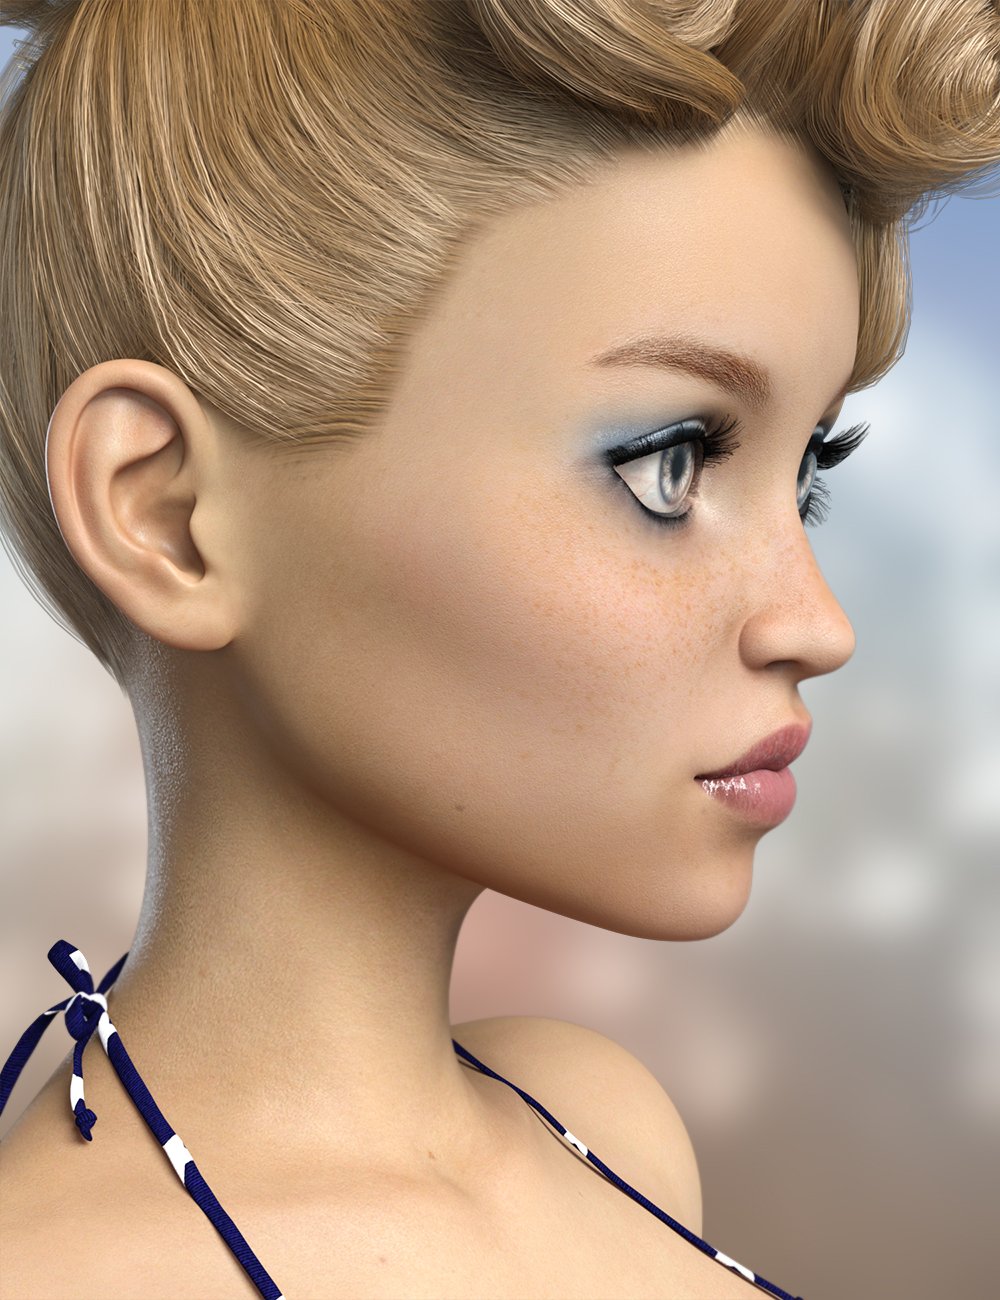 FWSA Lyla for The Girl 8 by: Fred Winkler ArtSabby, 3D Models by Daz 3D